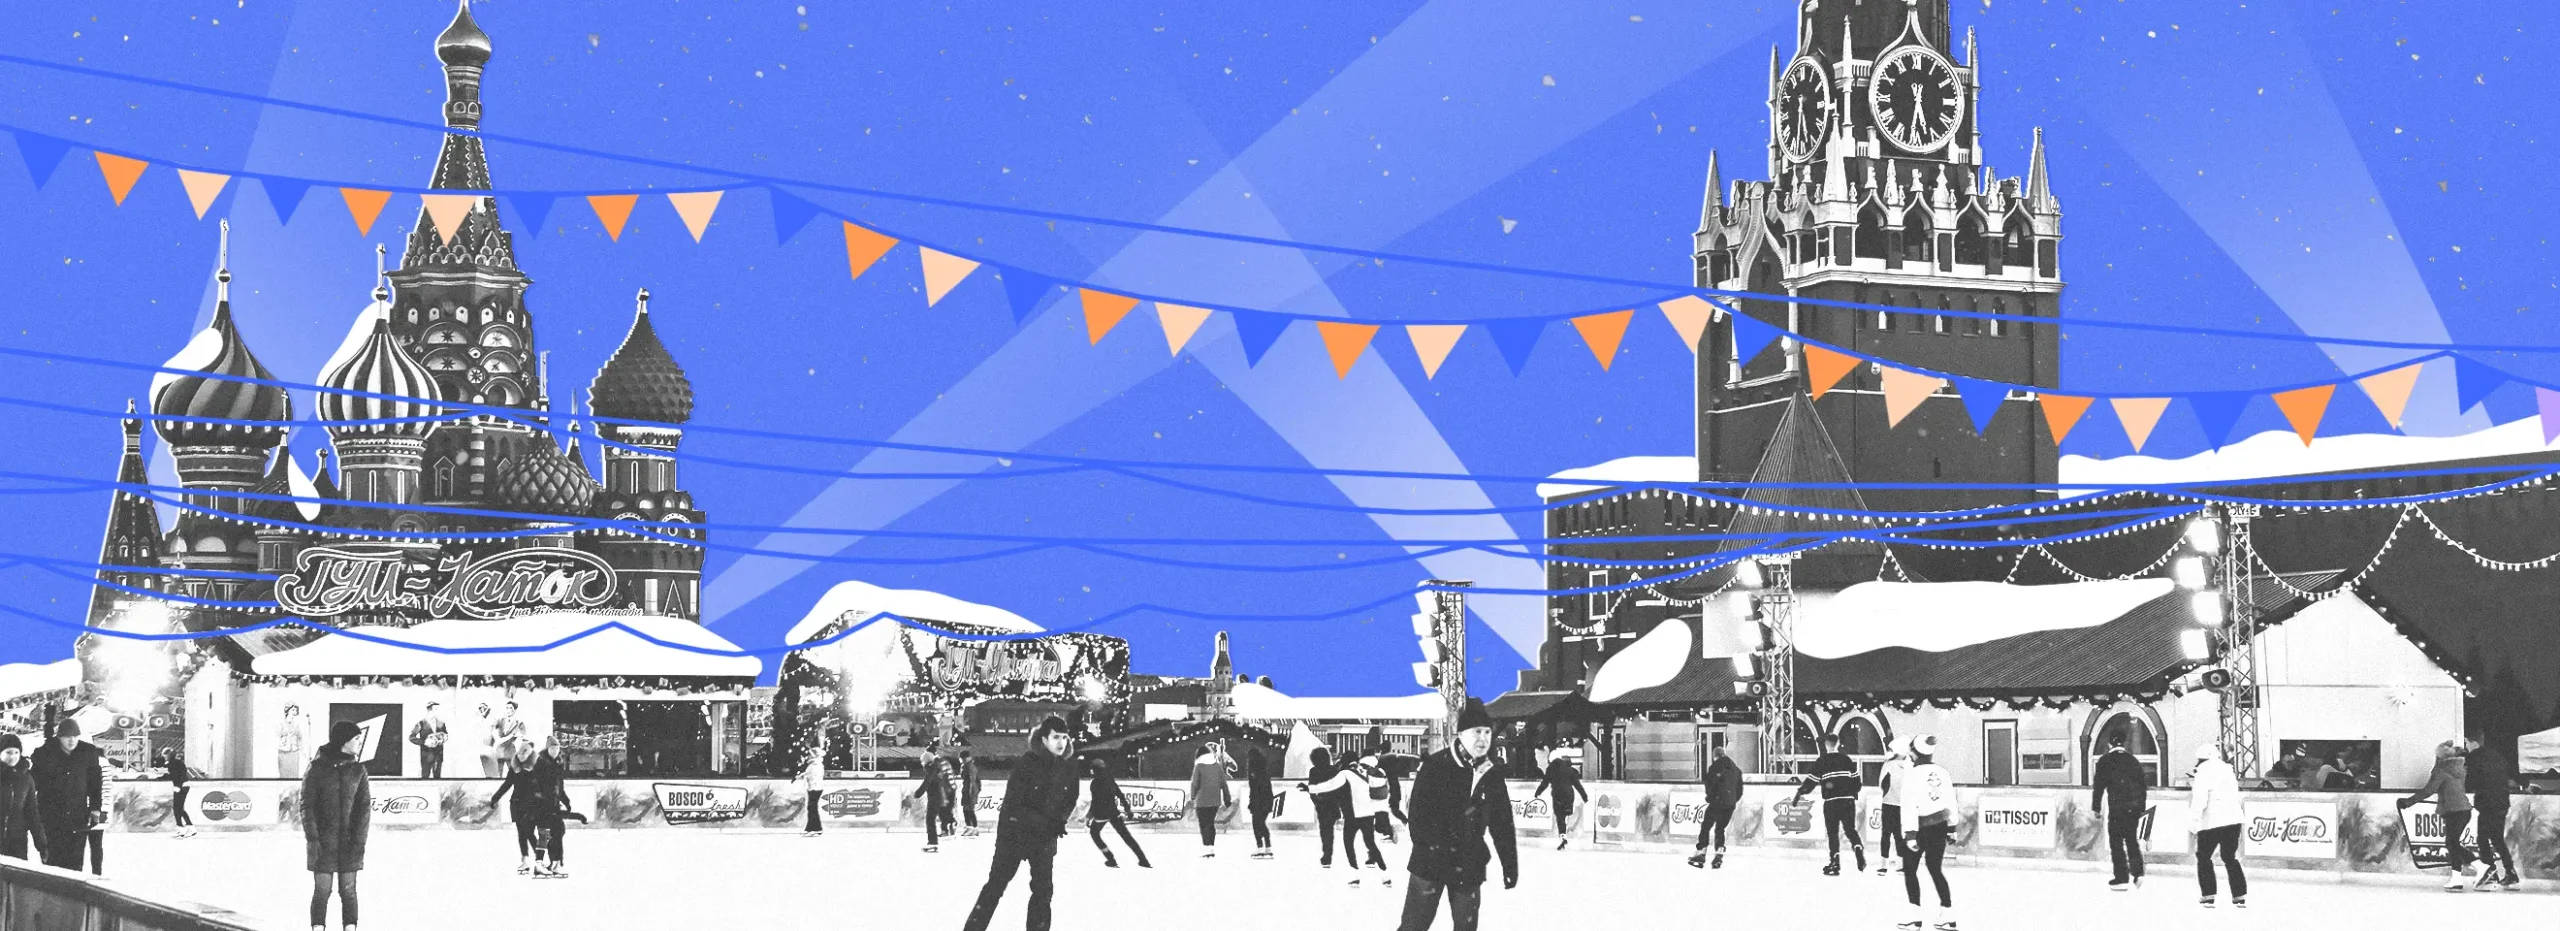 Полноразмерная обложка поста на тему: Новый год в Москве: чем заняться и куда пойти на праздники